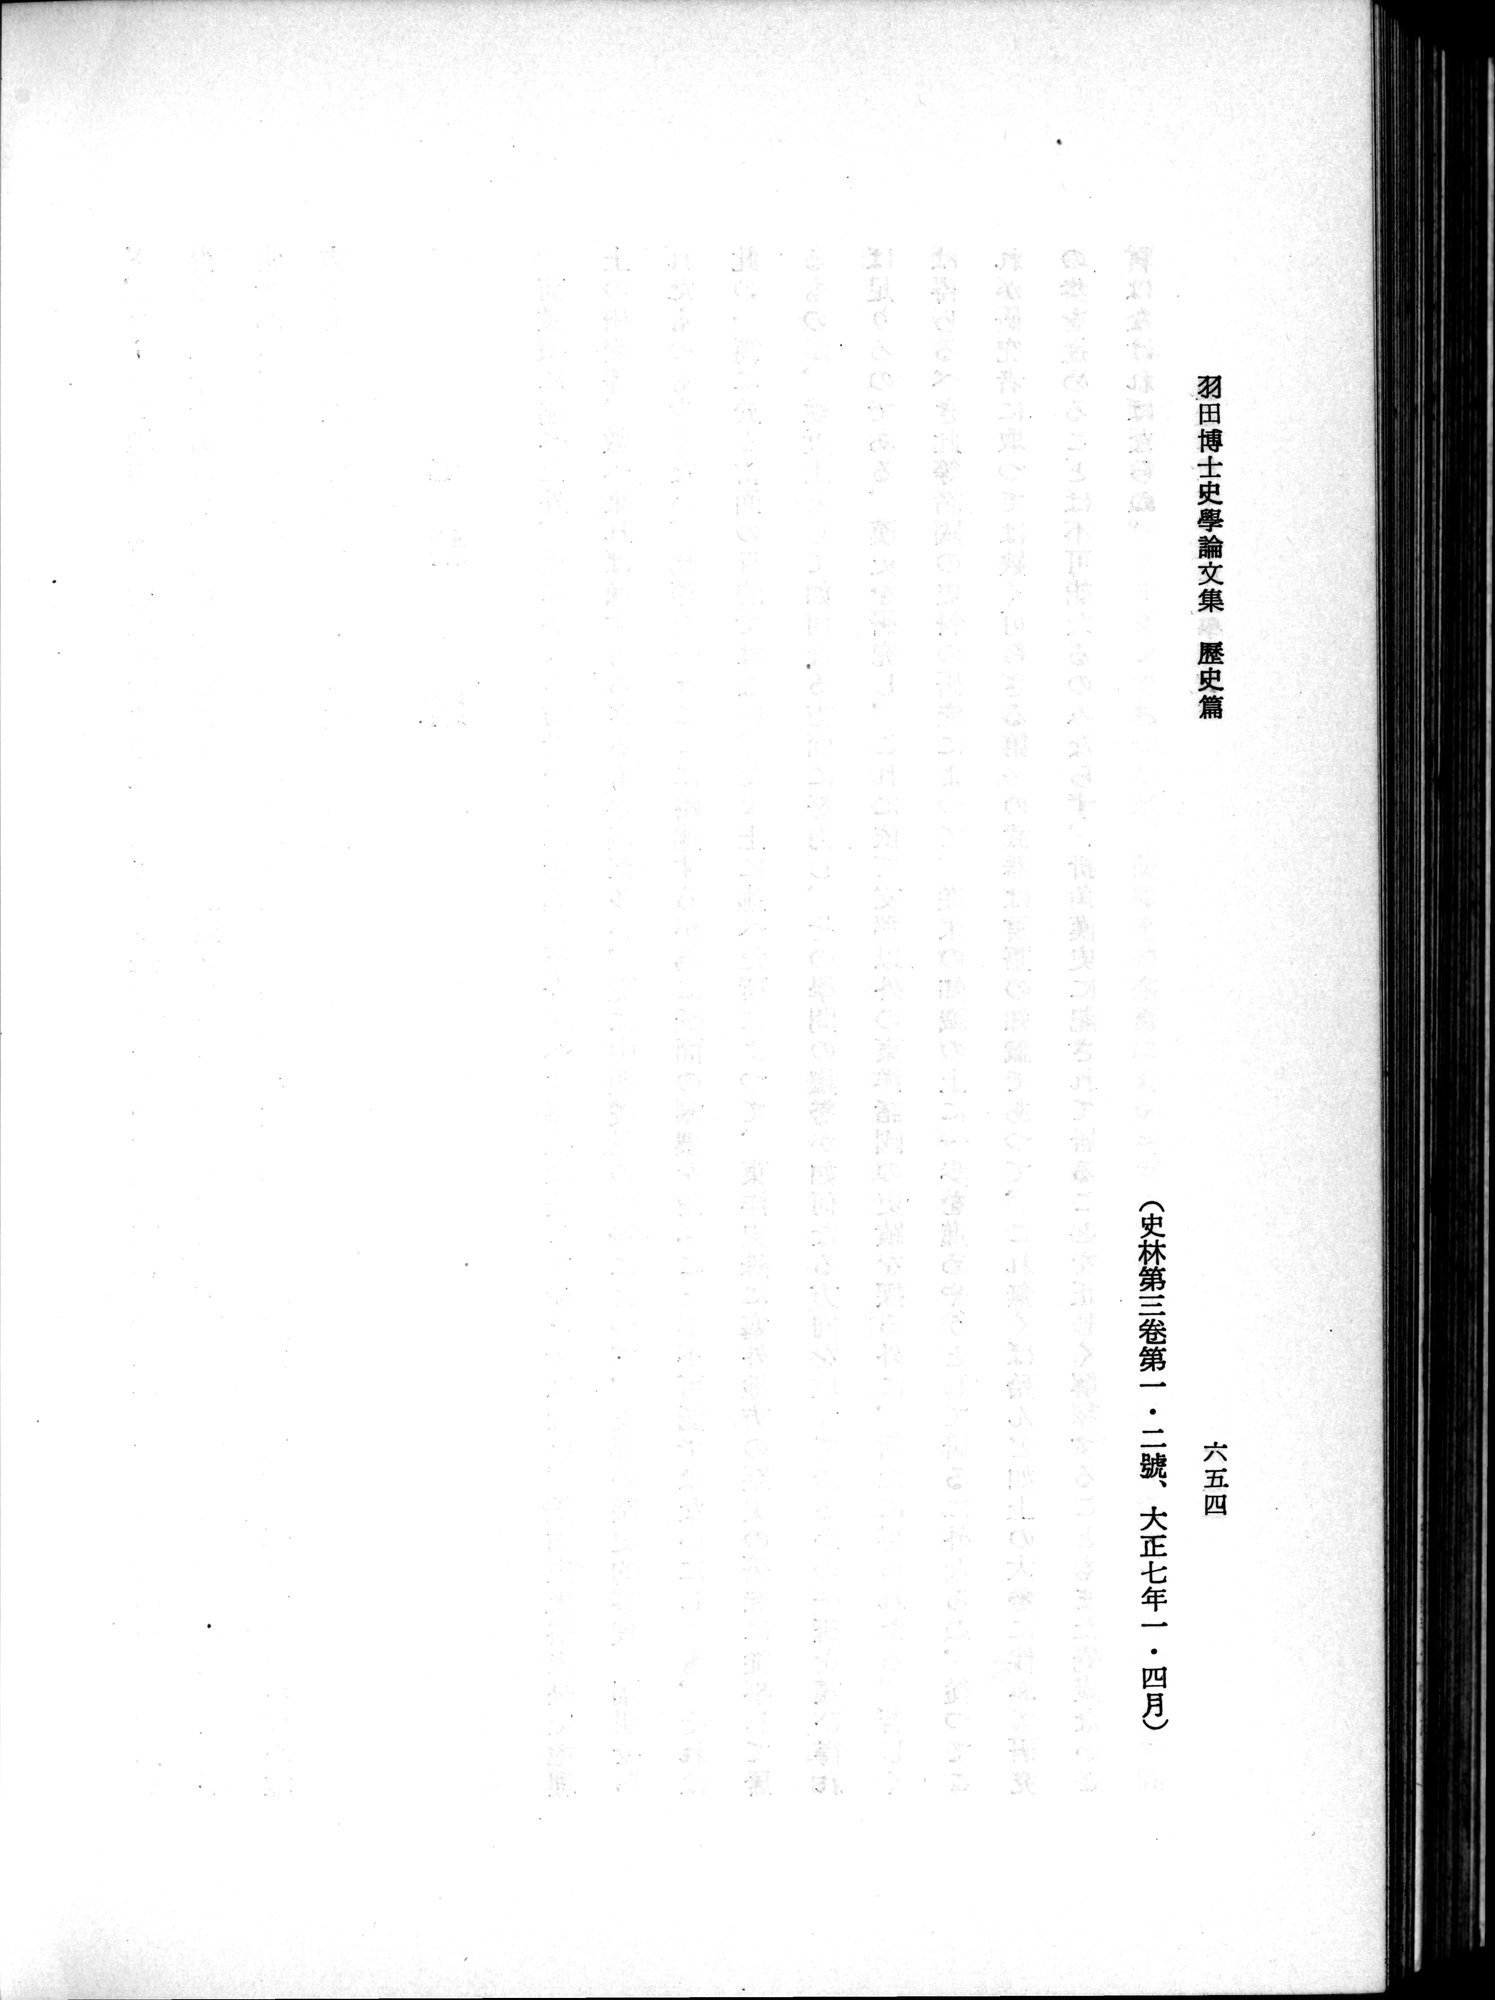 羽田博士史学論文集 : vol.1 / Page 692 (Grayscale High Resolution Image)